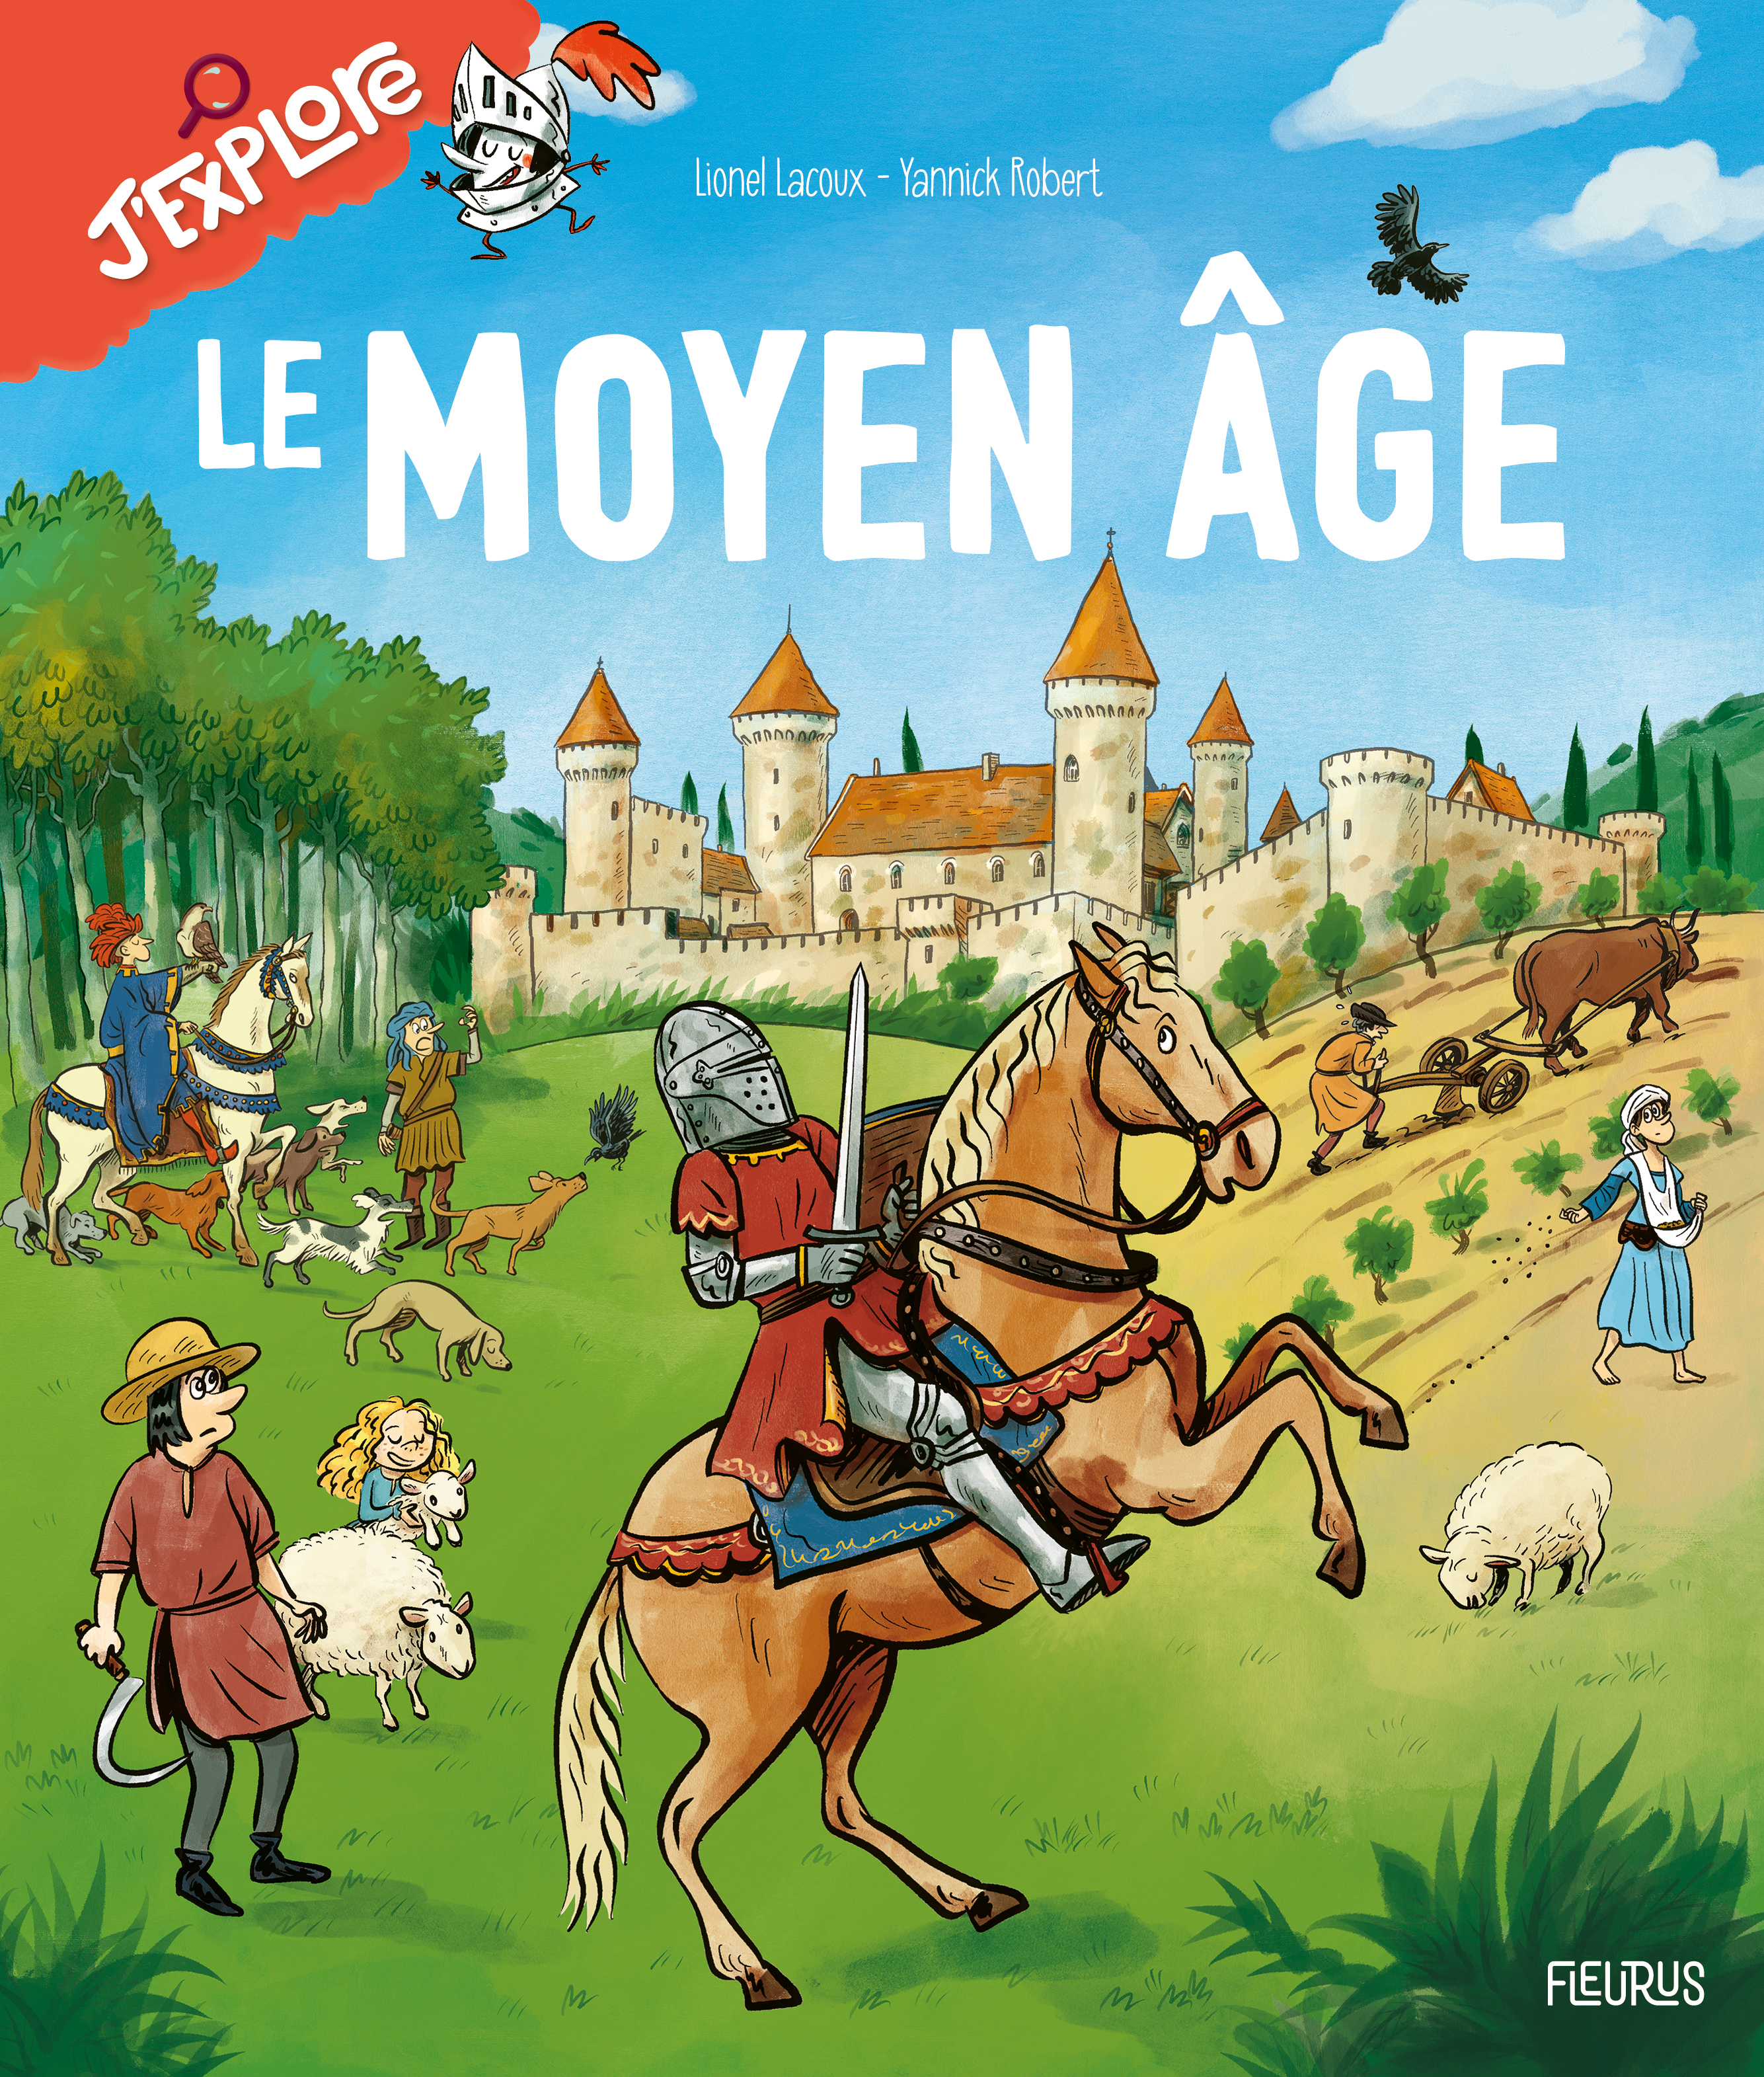 Le Moyen Age